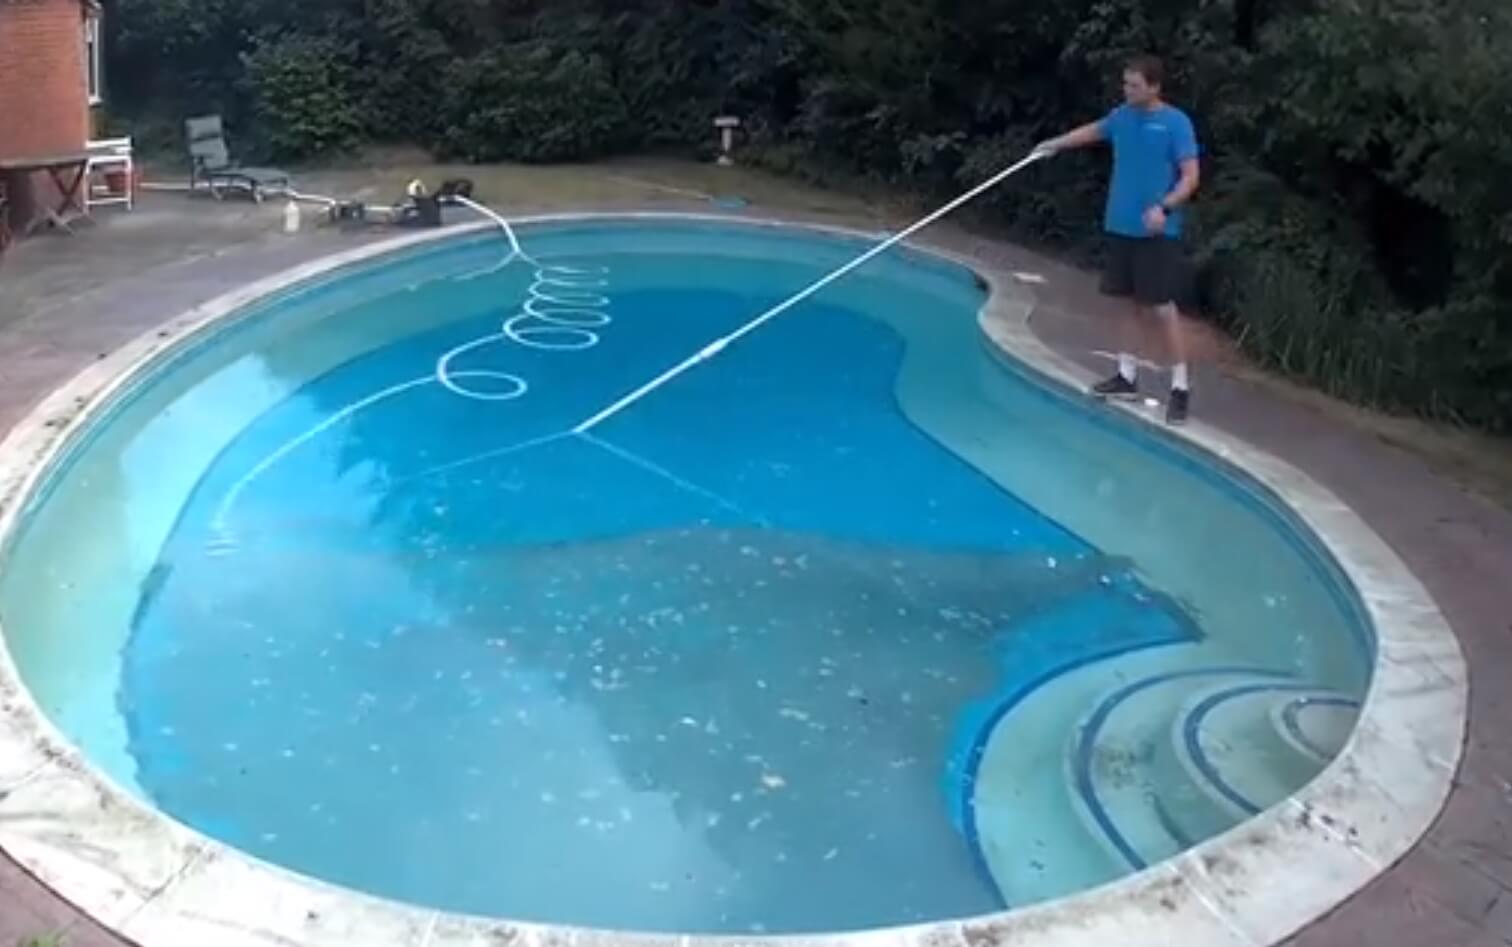 Milioni pregleda: Evo kako je ovaj čistač bazena postao veoma popularan na društvenim mrežama